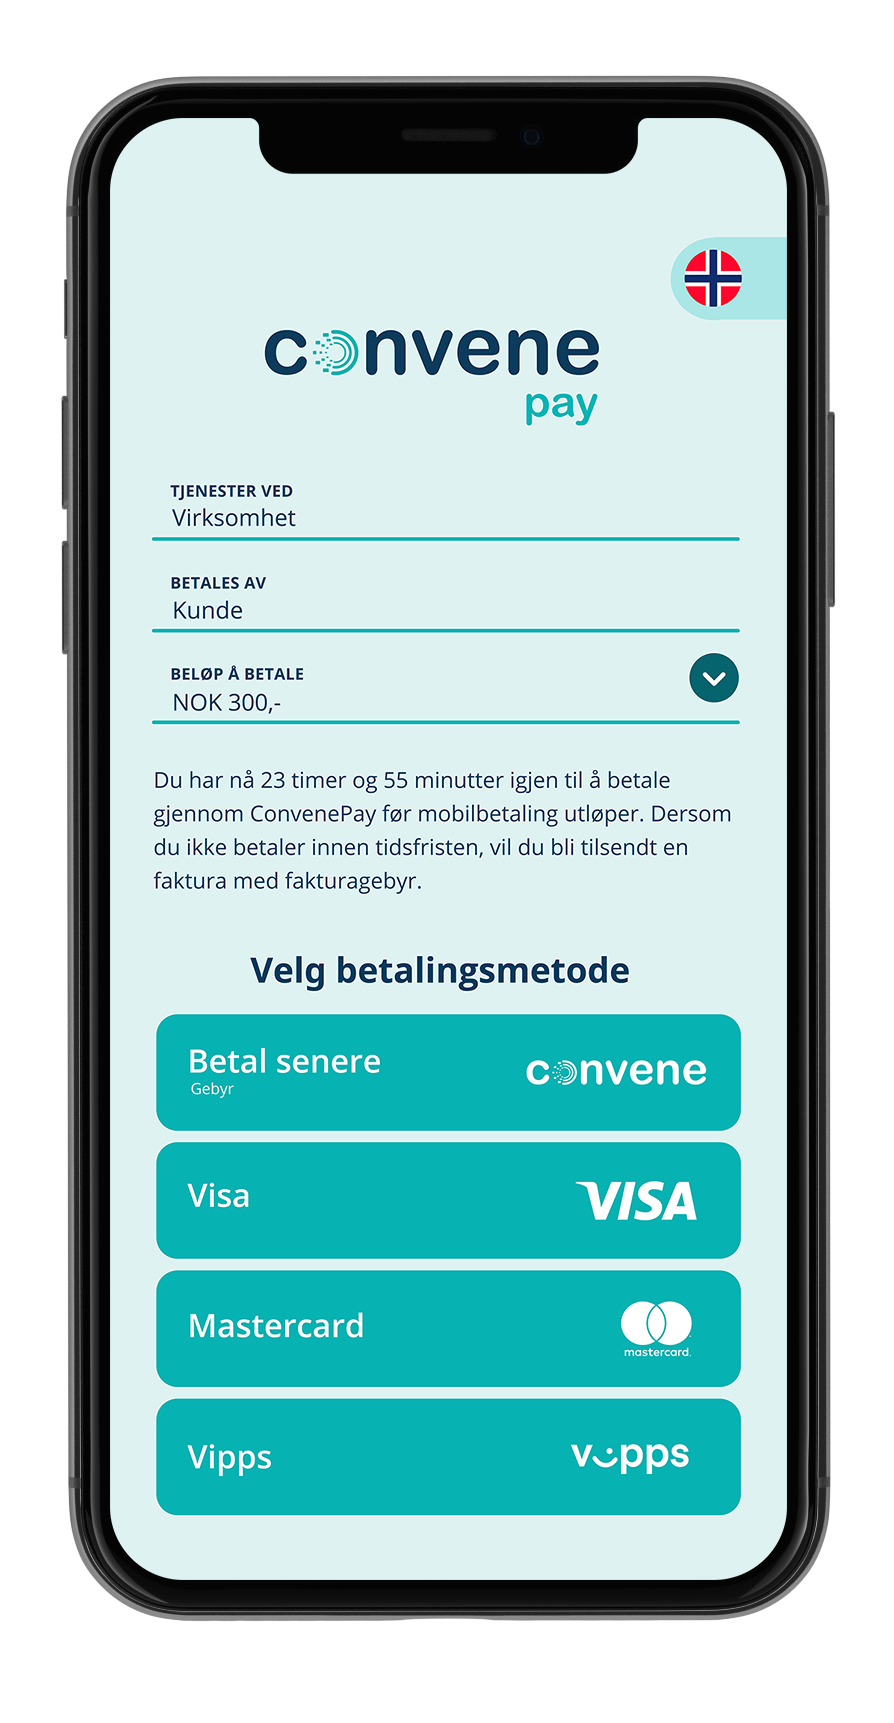 Bilde av forside på en mobil som viser mobilbetaling fra firmaet Convene - Klikk for stort bilde